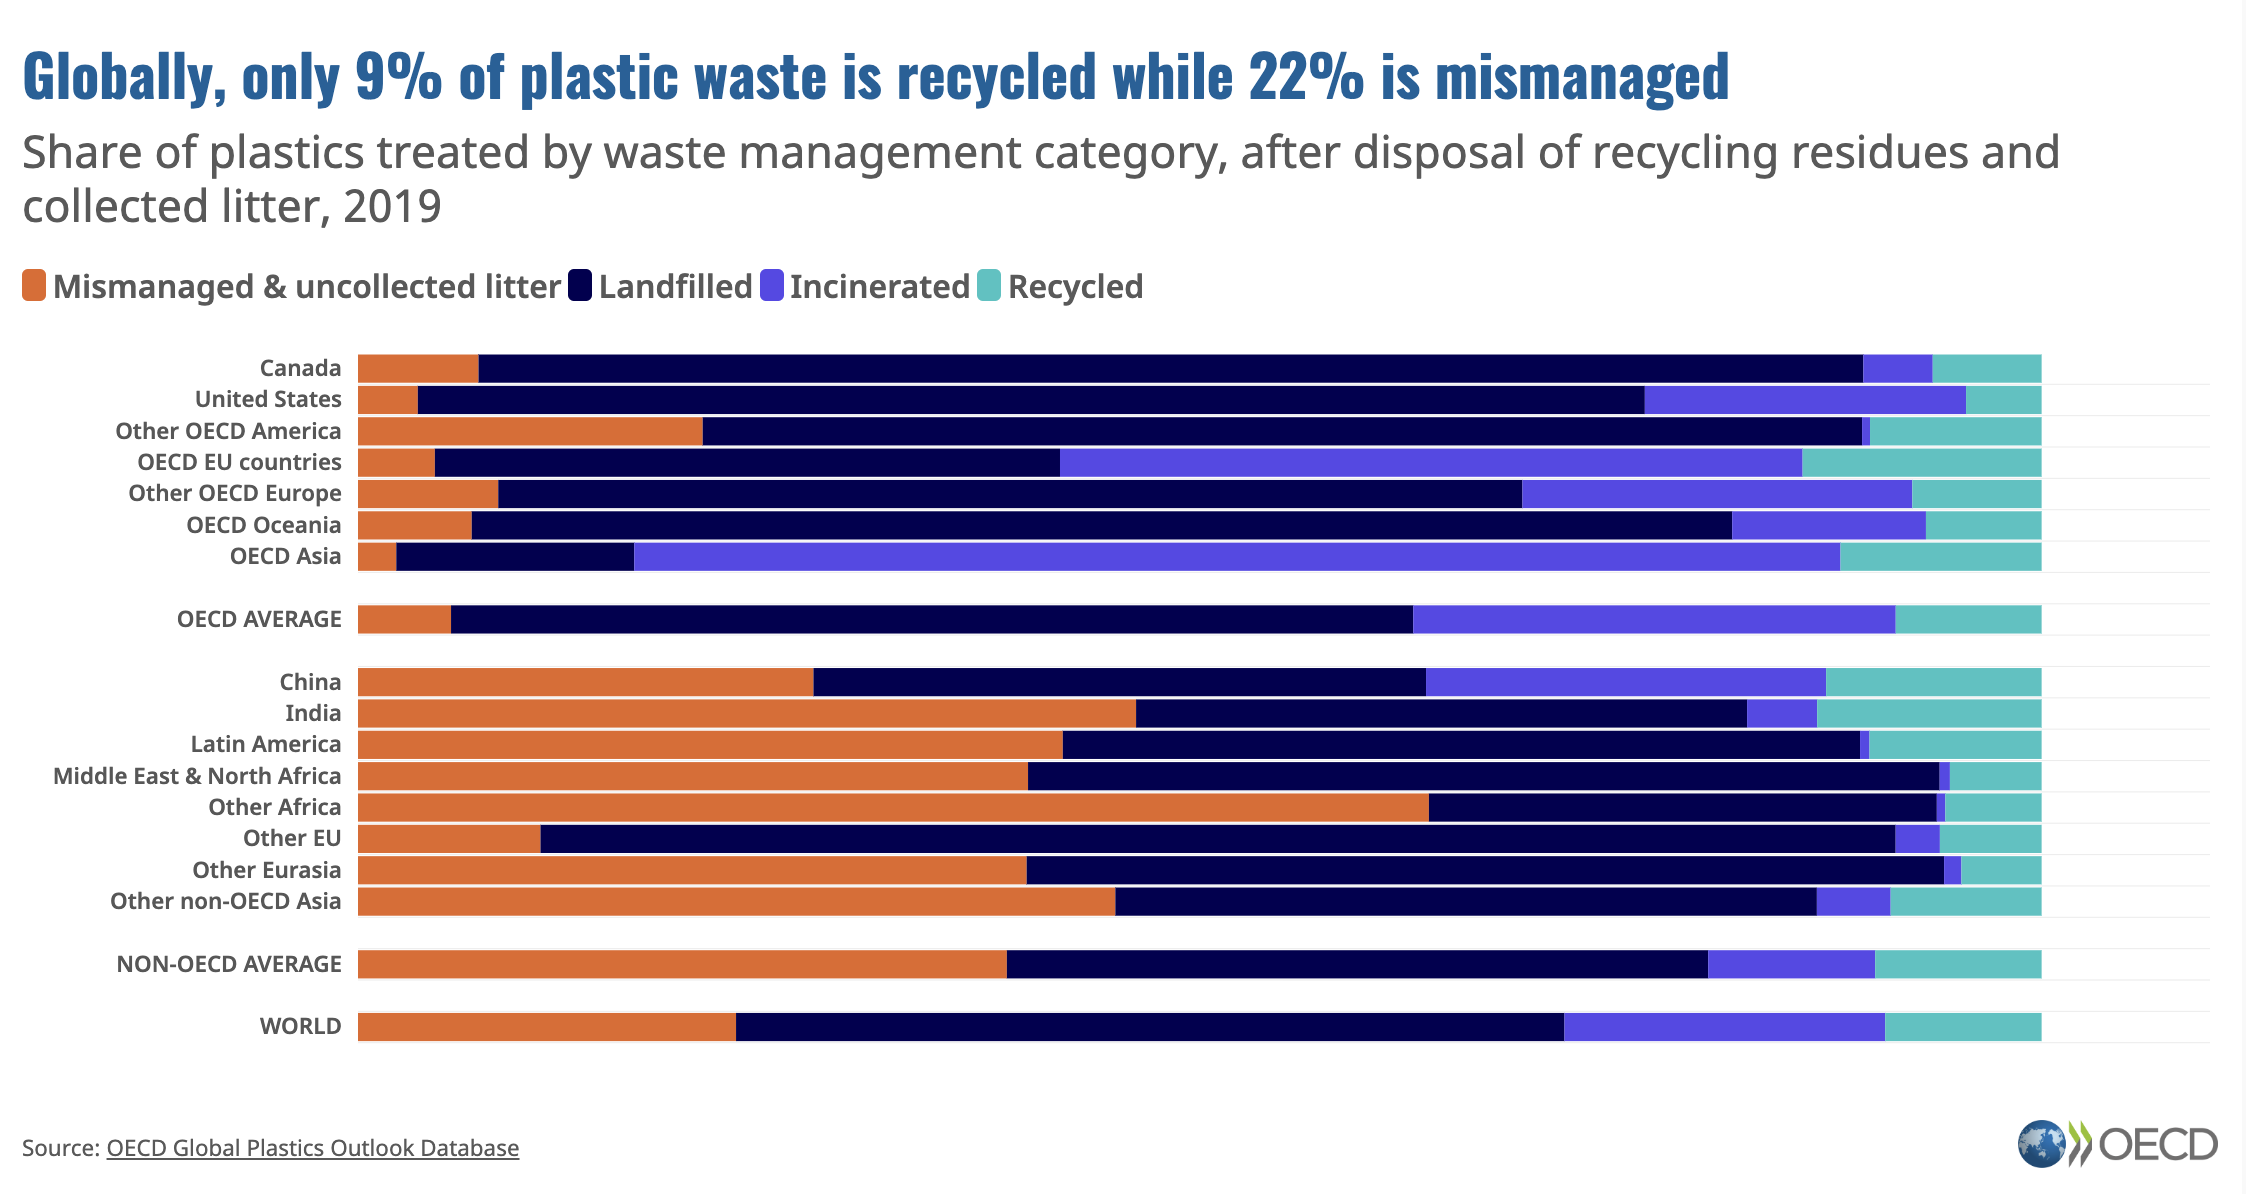 La plastica è un problema per gli ecosistemi, per la biodiversità e per la salute umana e animale. Ma anche per il clima della Terra